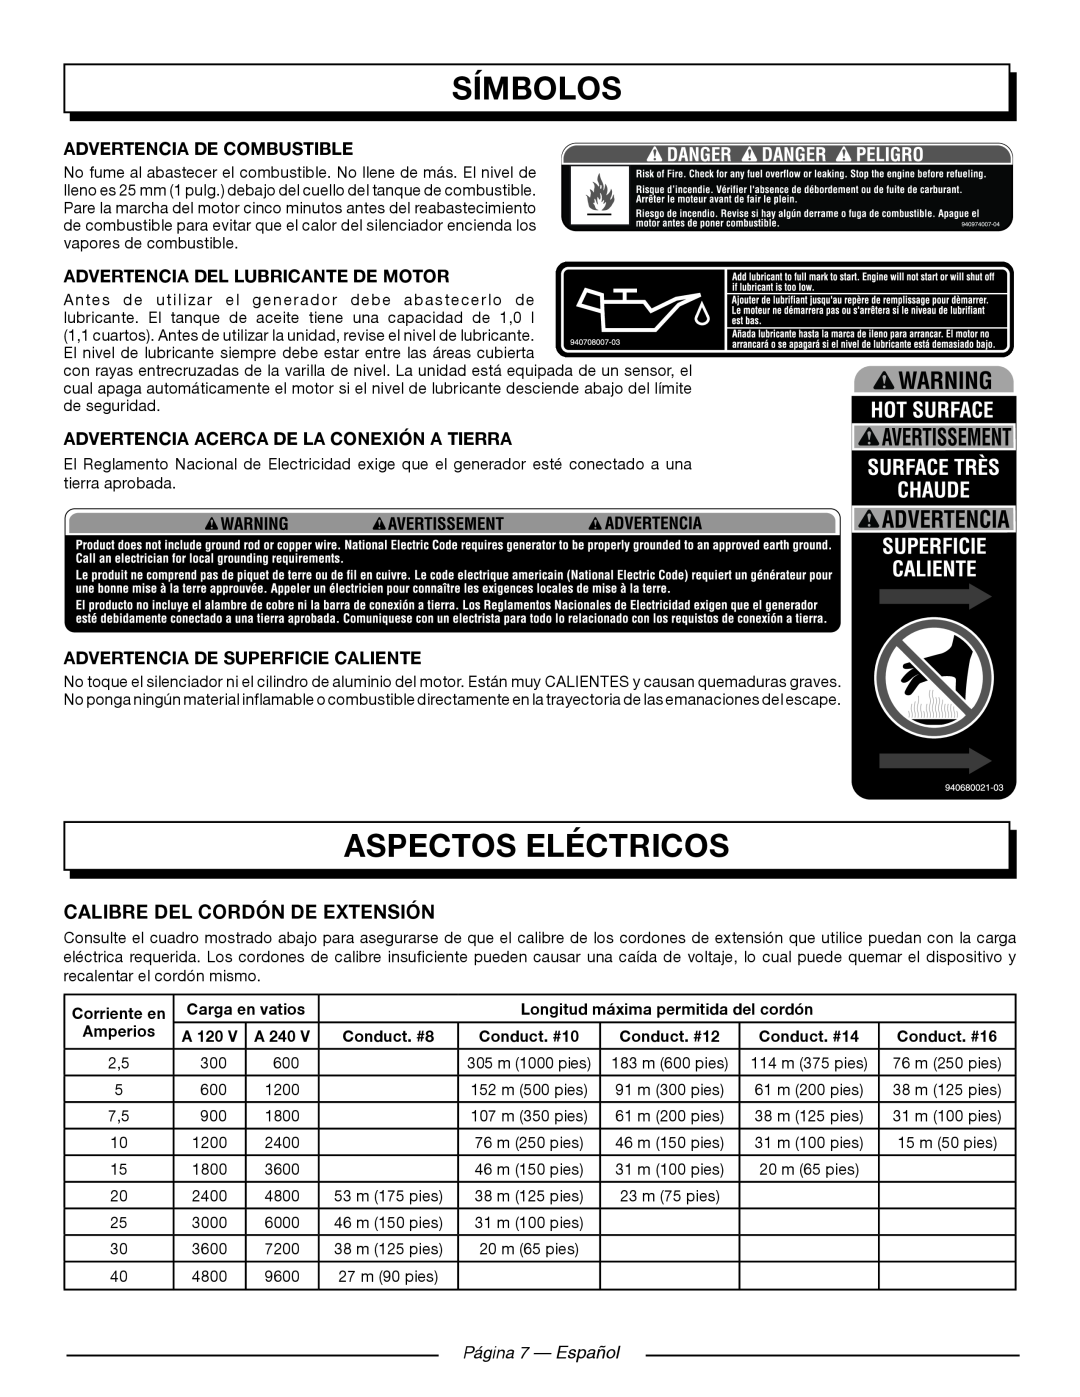 Homelite UT905011 Aspectos Eléctricos, Calibre Del Cordón De Extensión, Advertencia De Combustible, Página 7 — Español 